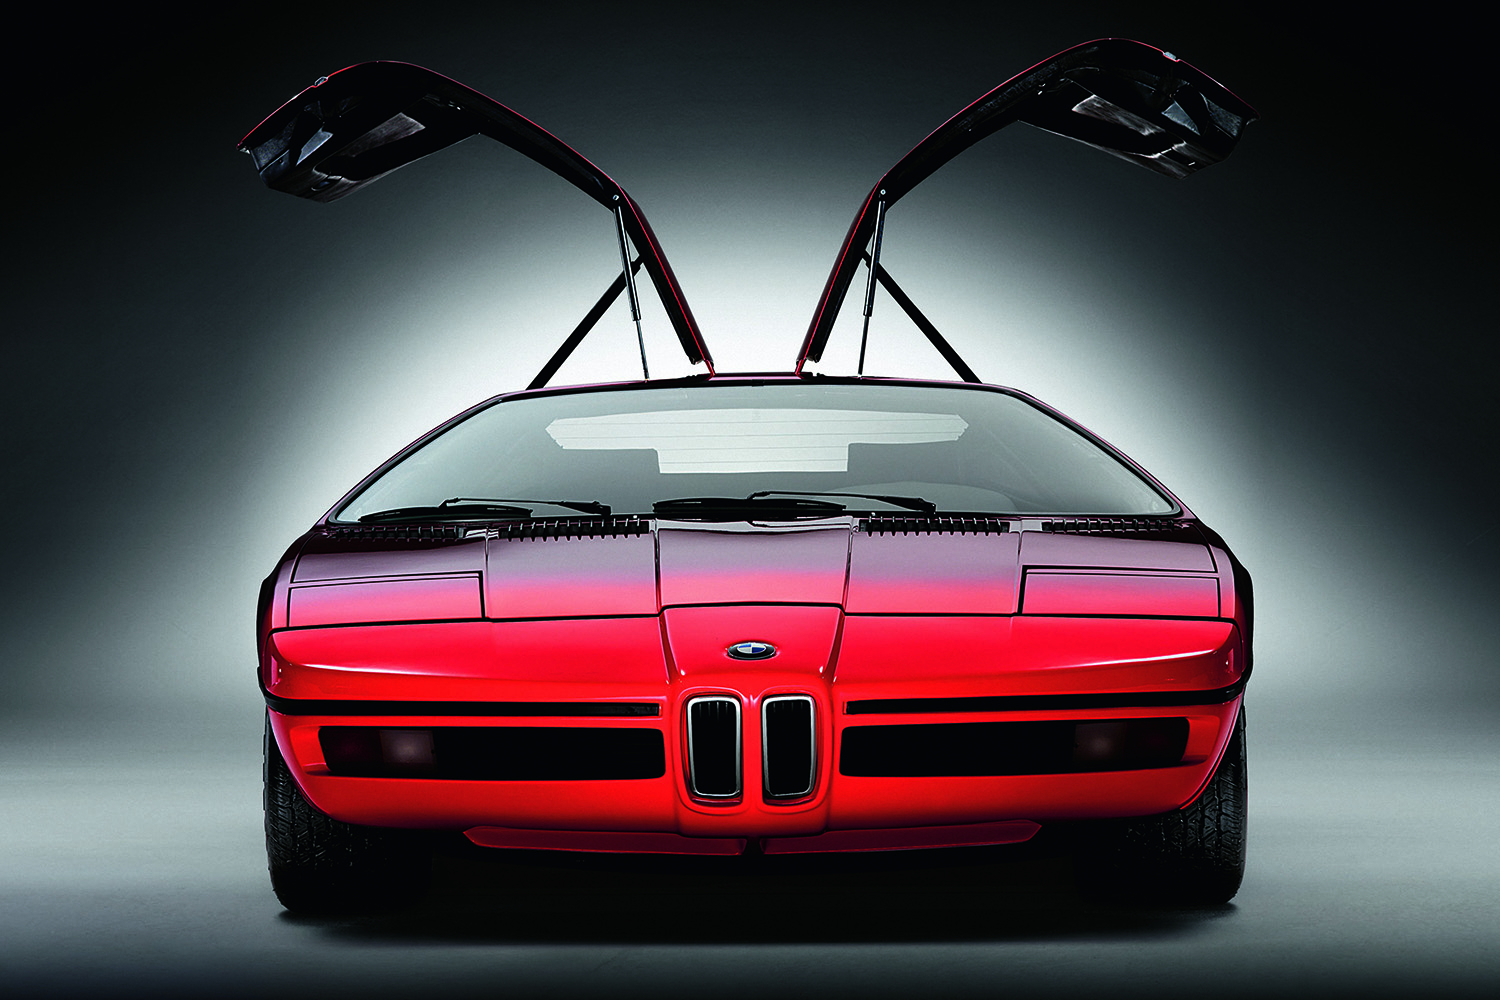 BMWの歴史的モデルはコンセプトカーの「BMWターボ」から始まった